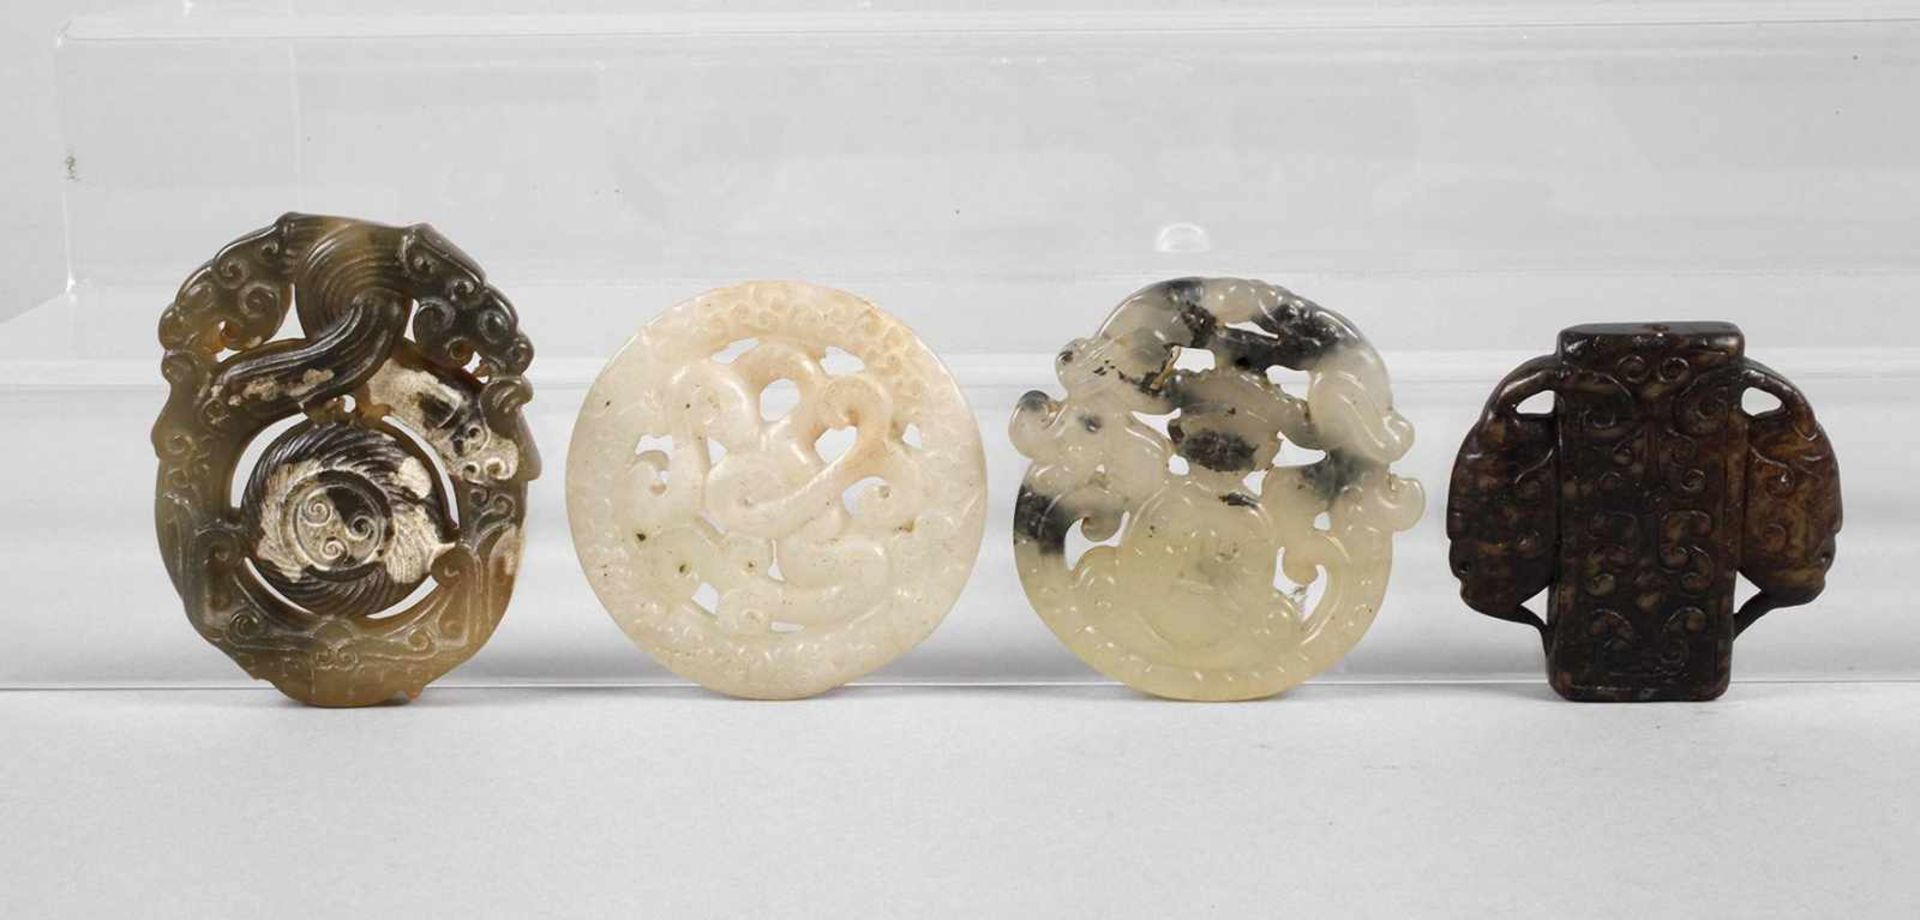 Vier JadeschnitzereienChina, 20. Jh., verschiedenfarbige Nephrite/Jadeite, aufwendig durchbrochen